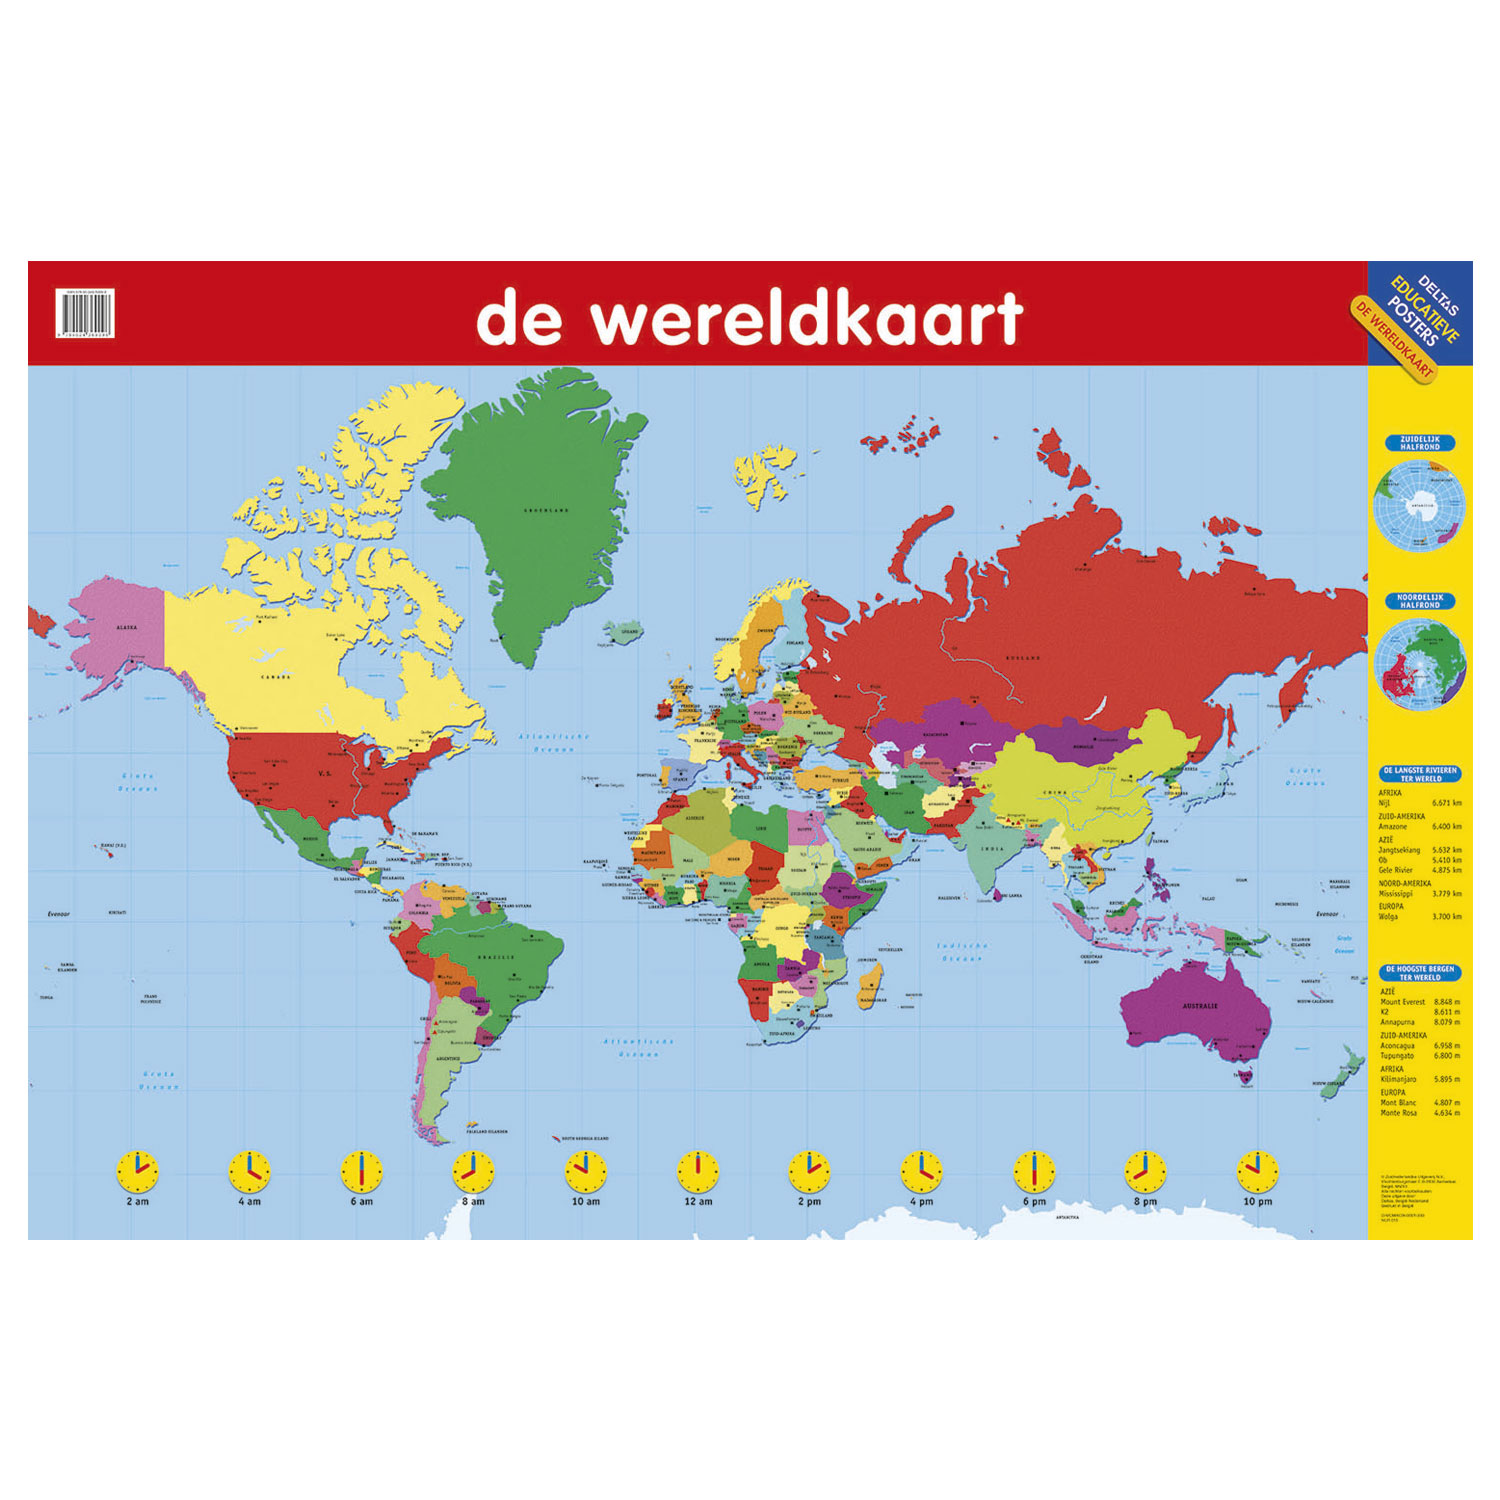 neef Autonoom Stimulans Educatieve poster - De Wereldkaart online kopen? | Lobbes Speelgoed